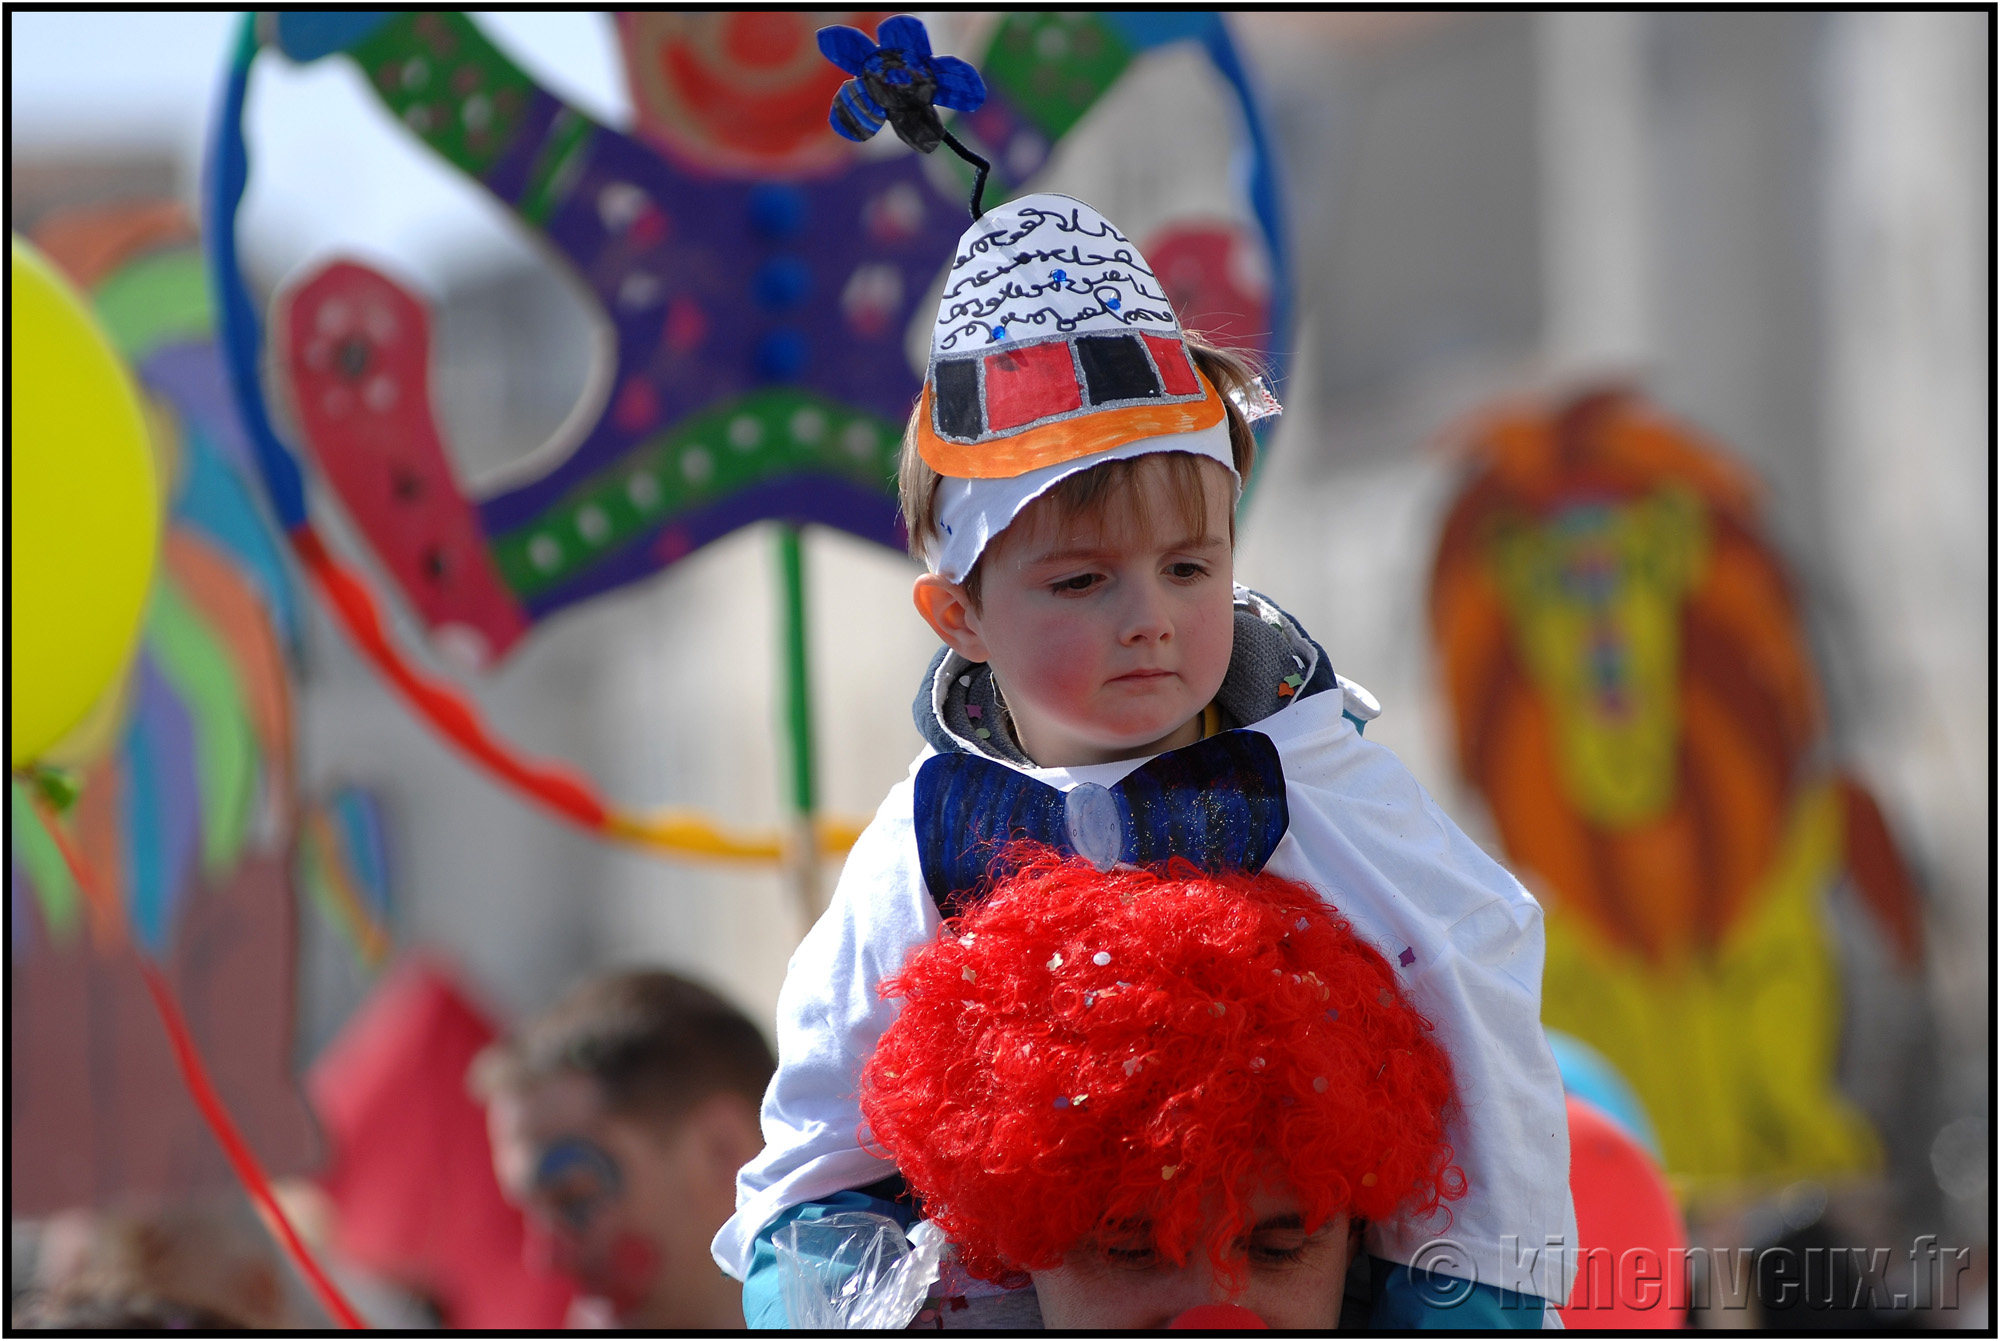 kinenveux_39_carnaval2015lr.jpg - Carnaval des Enfants 2015 - La Rochelle